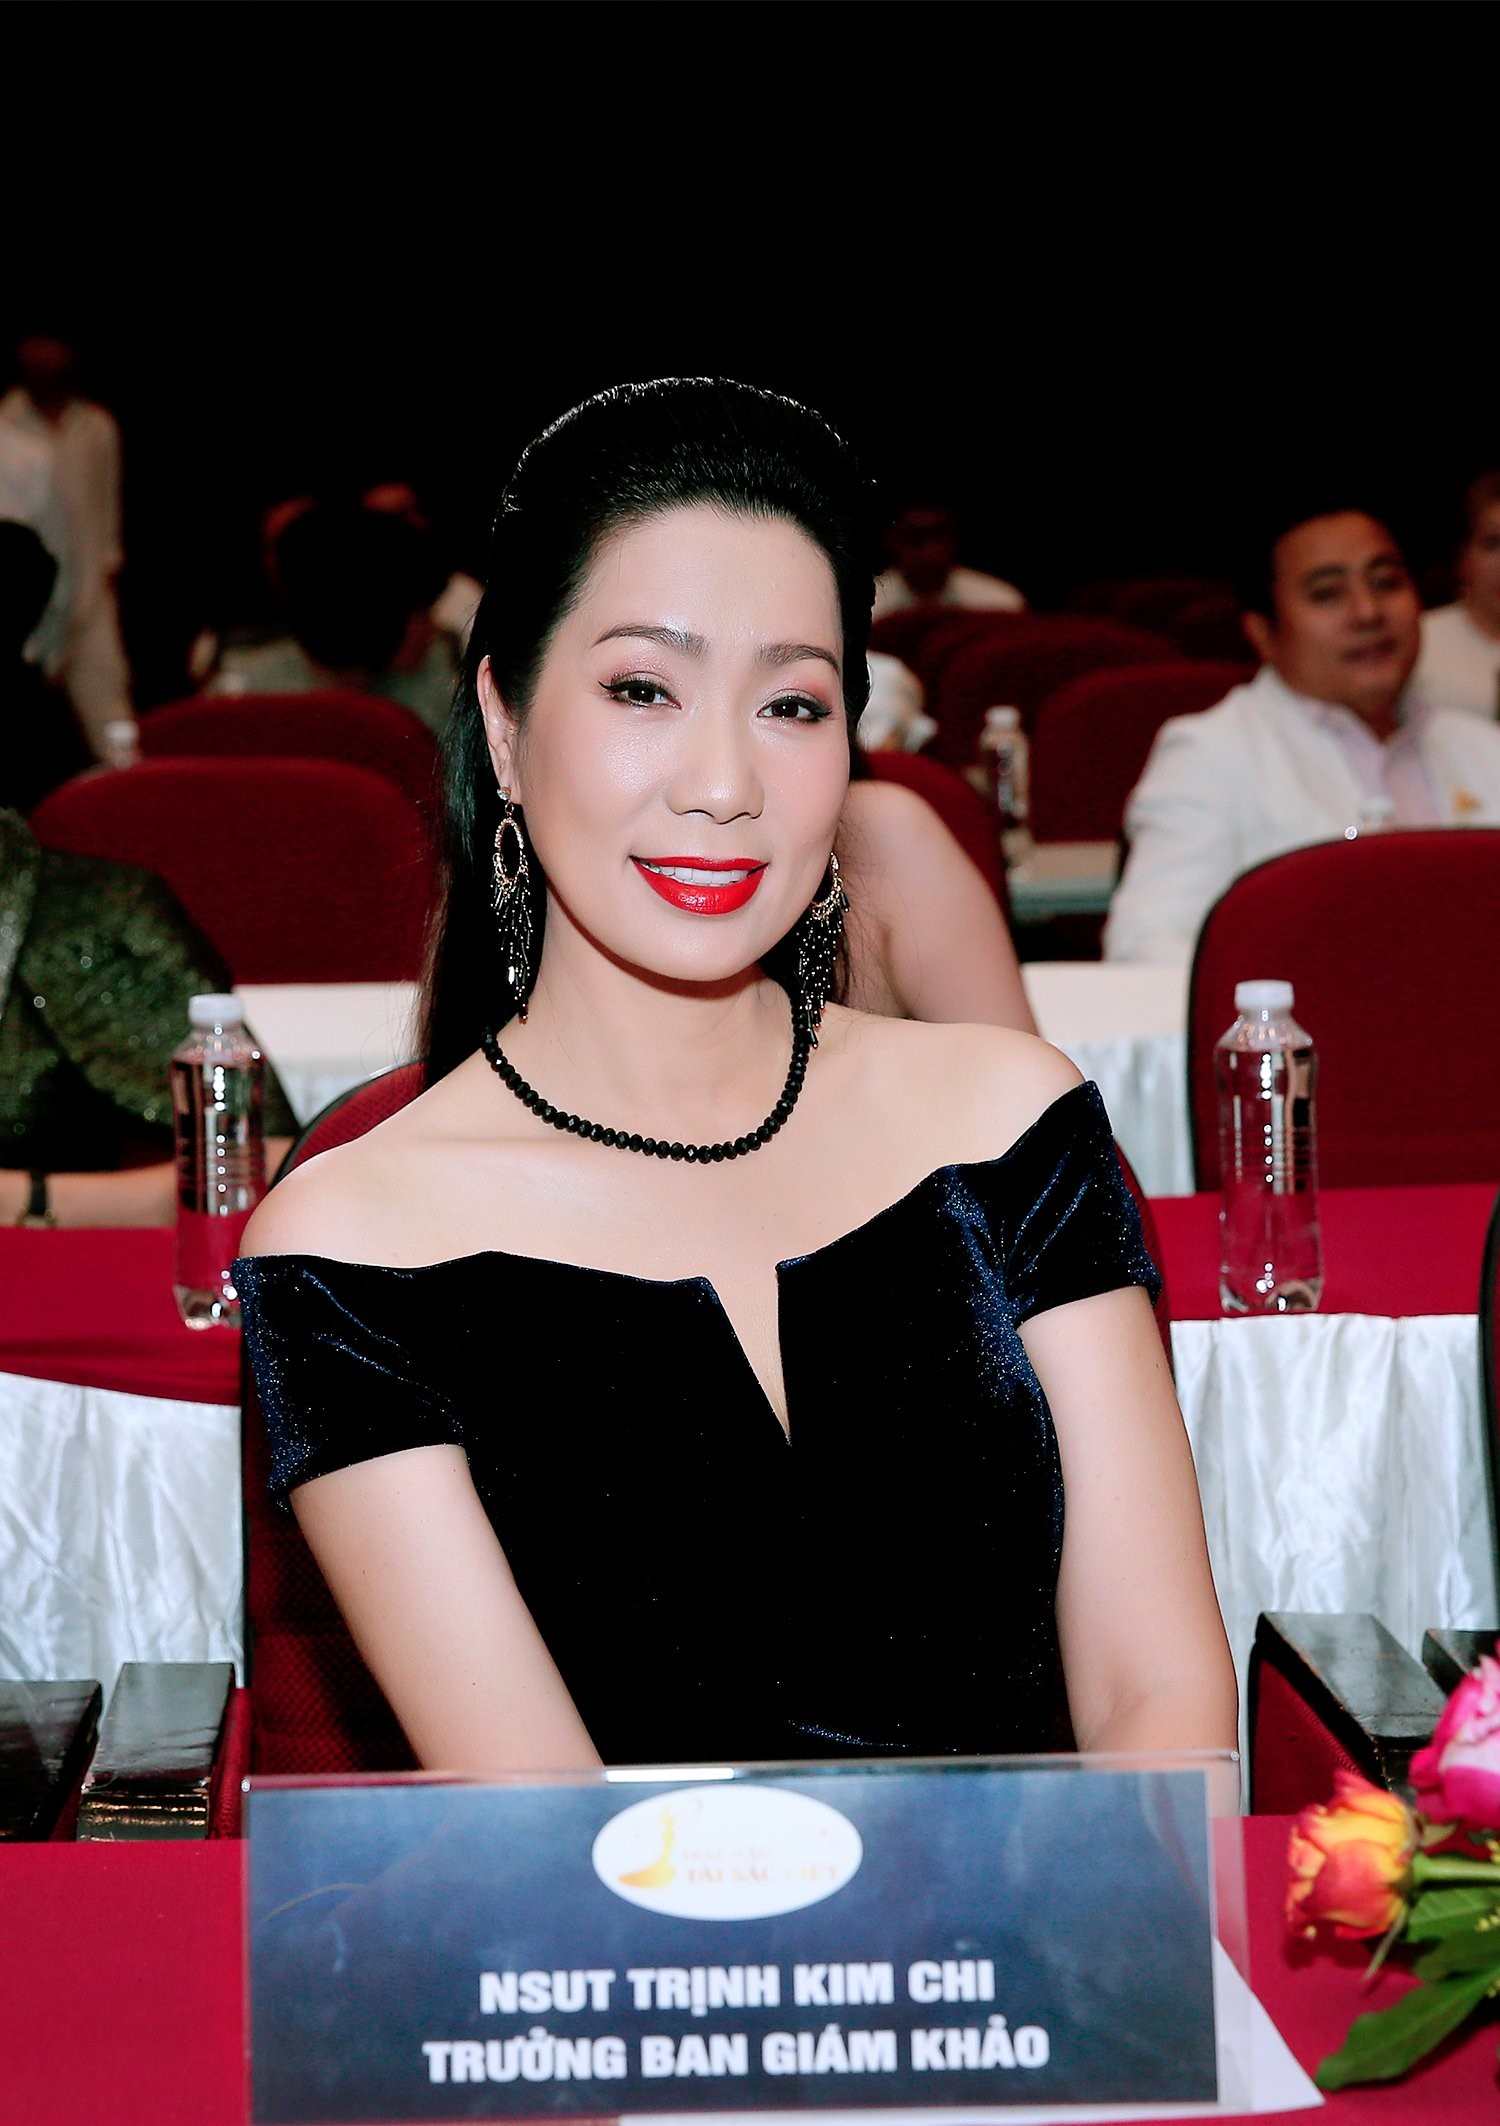 NSƯT Trịnh Kim Chi sẽ ngồi ghế ban giám khảo để tìm ra người xứng đáng với ngôi vị Hoa hậu. Ảnh: BTC.